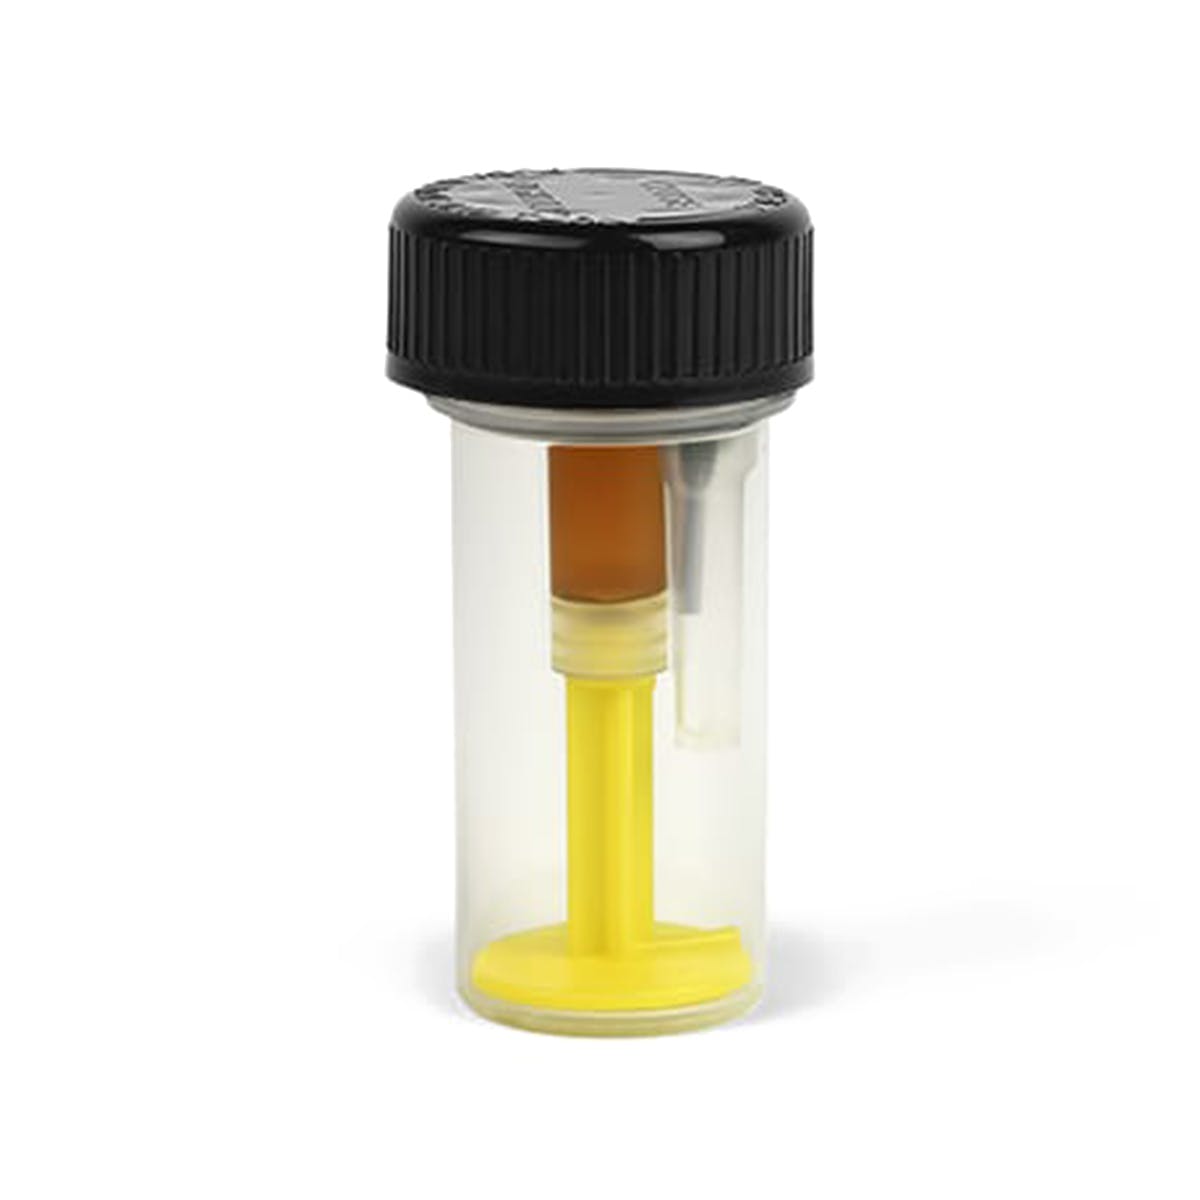 CBD Pain Management CO2 Oil Syringe Refill